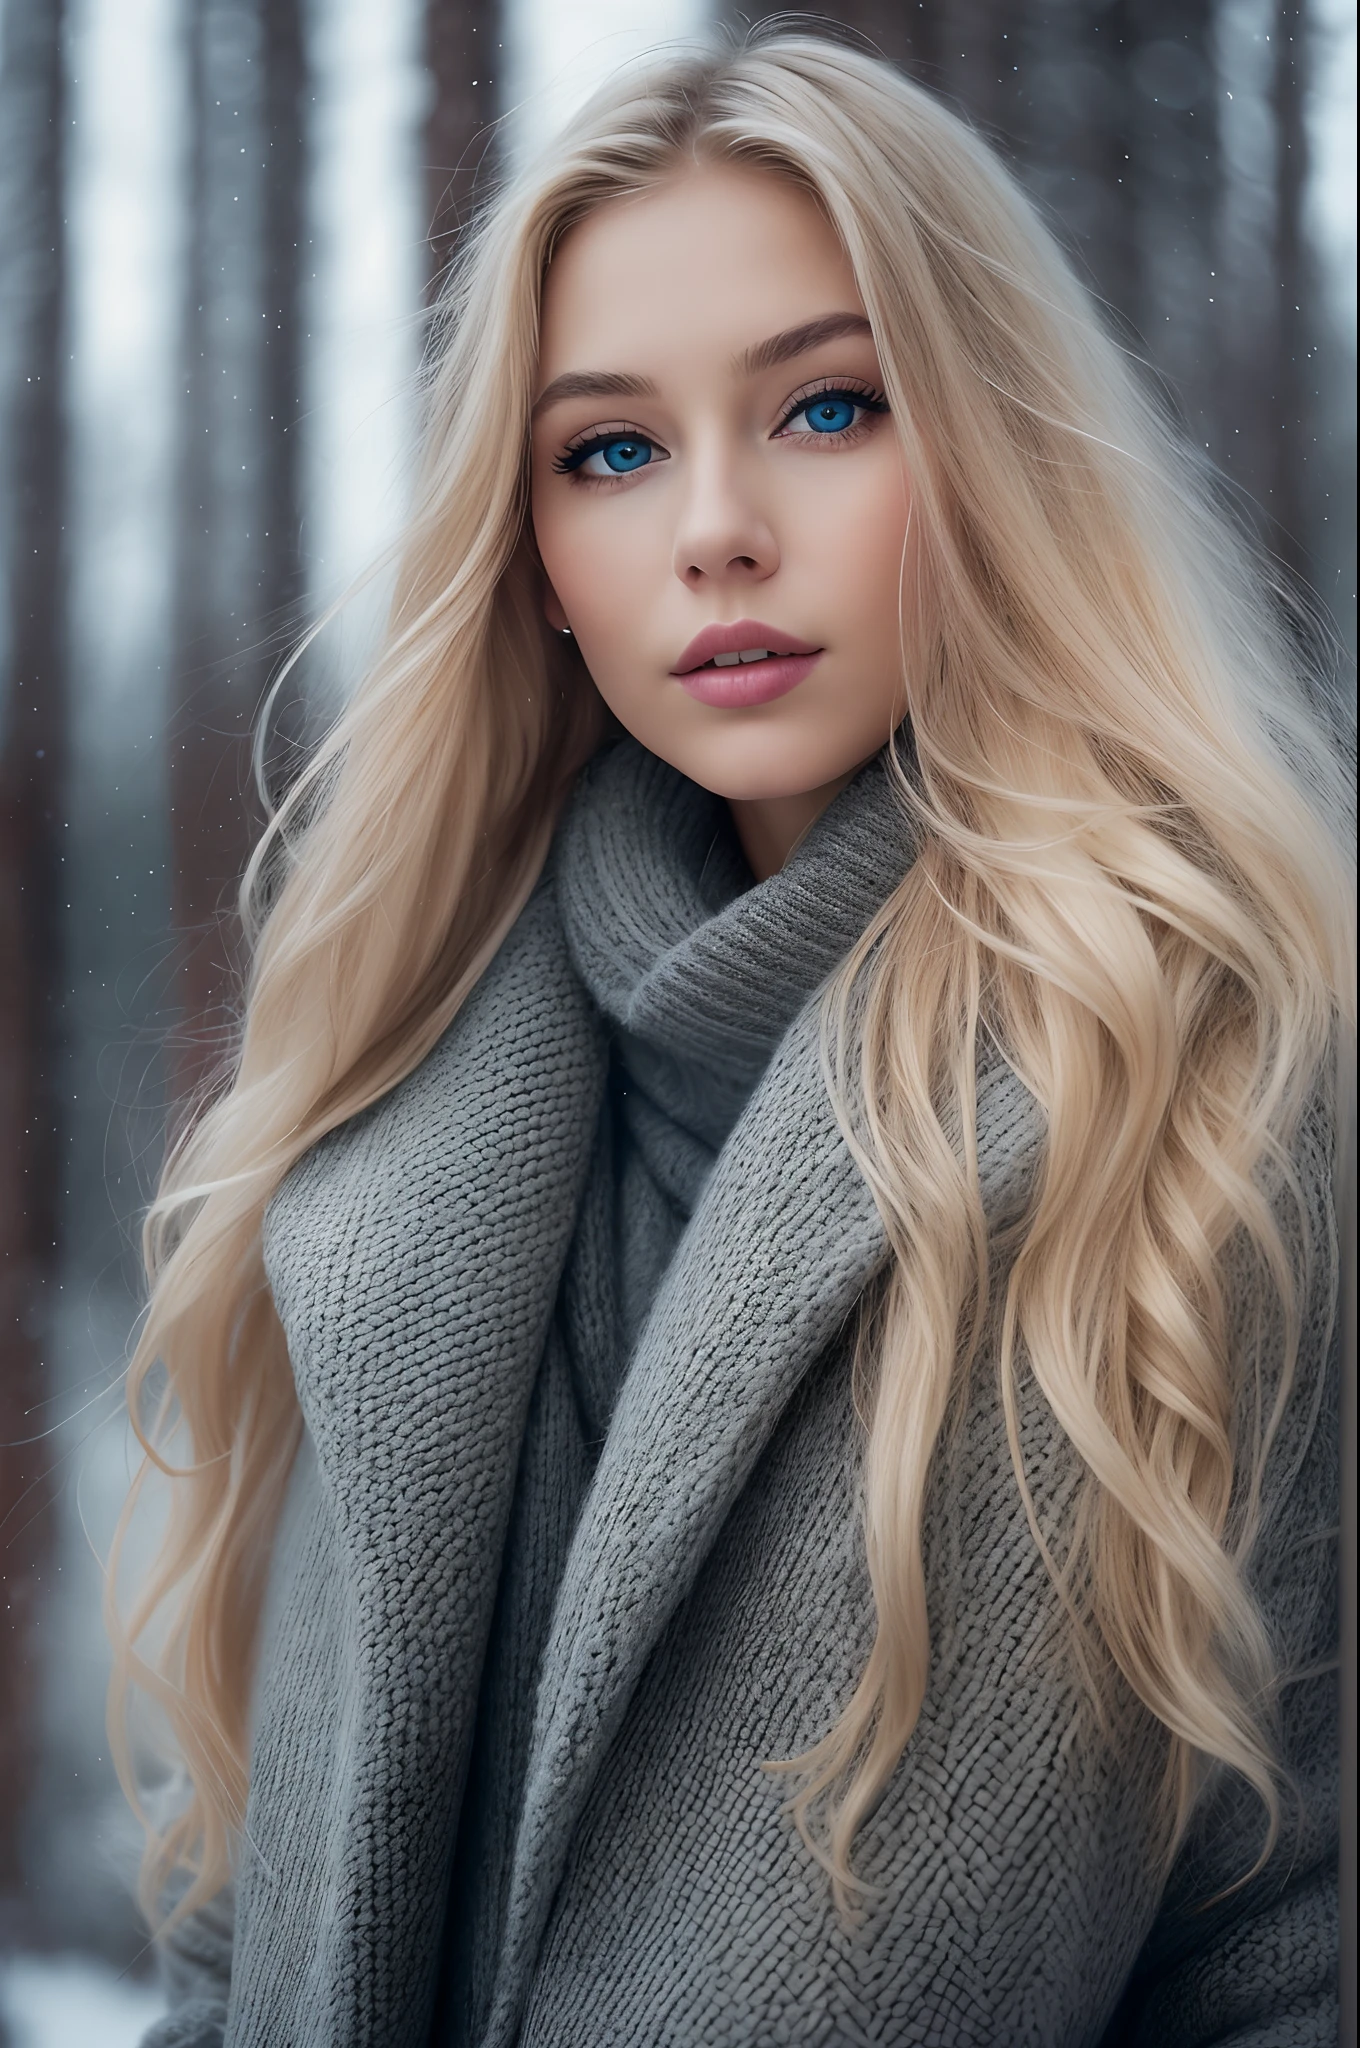 長いウェーブのかかったブロンドの髪を持つ冬服を着たゴージャスなノルウェー人女性のプロのポートレート写真, 美しい左右対称の顔, エレガントで暖かい冬のファッション服を着る, 由紀, 霧,超鋭利な, 詳細な顔,
素晴らしい近代的な都市環境, 超現実的な, 非常に詳細な, 複雑な, シャープなフォーカス, 被写界深度, ミディアムショット, んふふ, 8k, パーフェクトアイズアイズ, ハイコントラスト